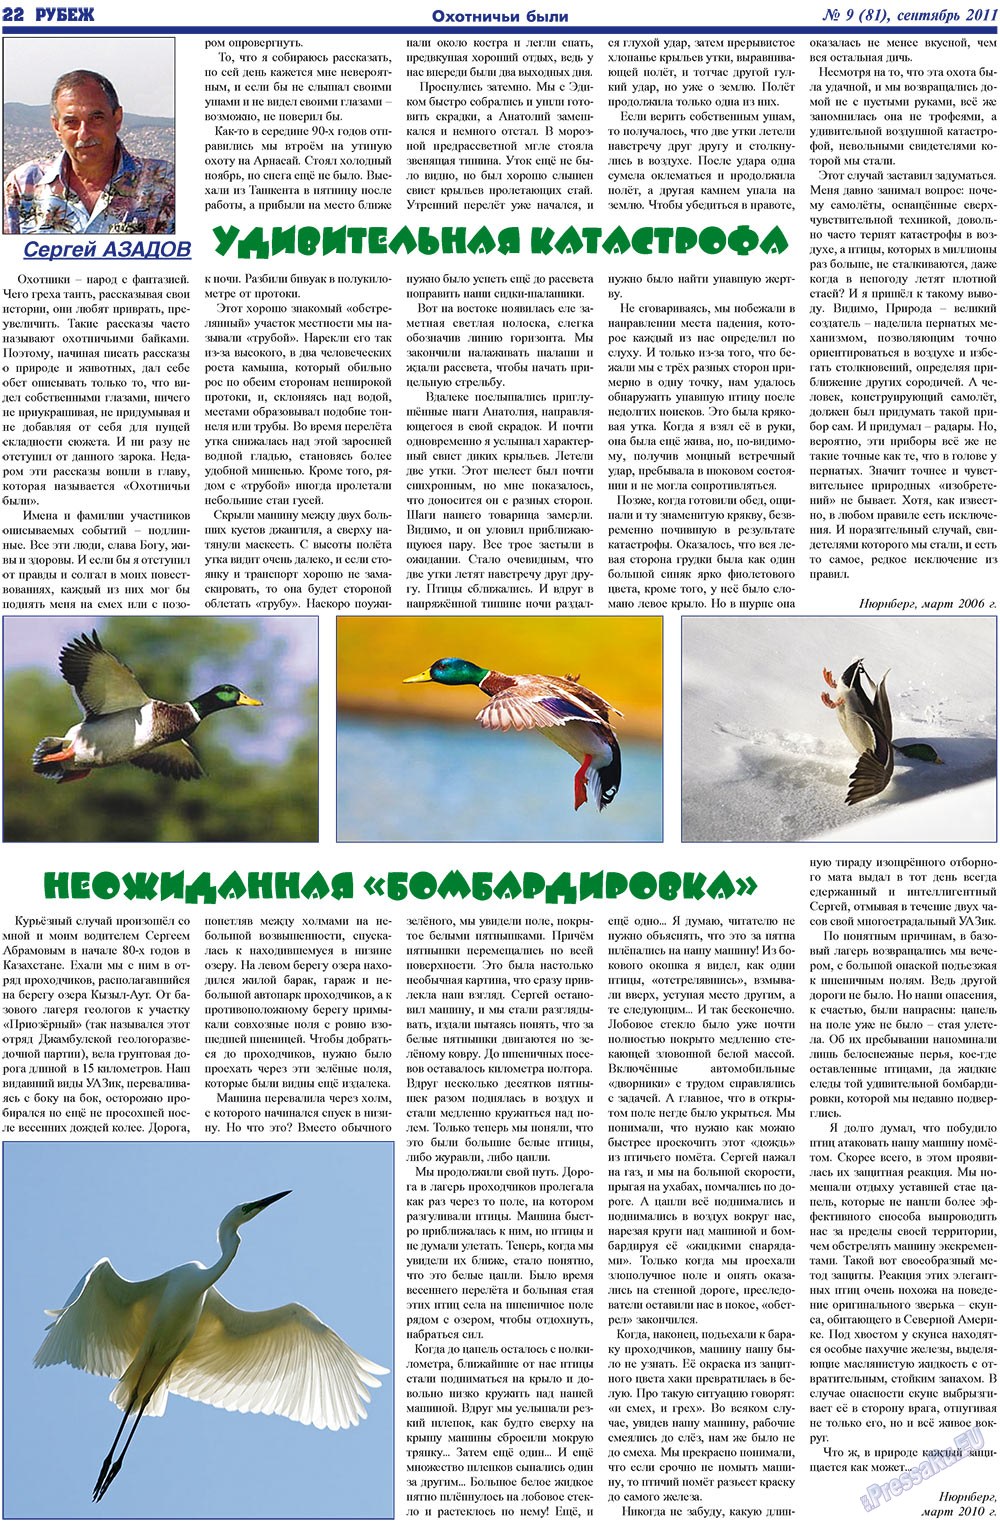 Рубеж (газета). 2011 год, номер 9, стр. 22